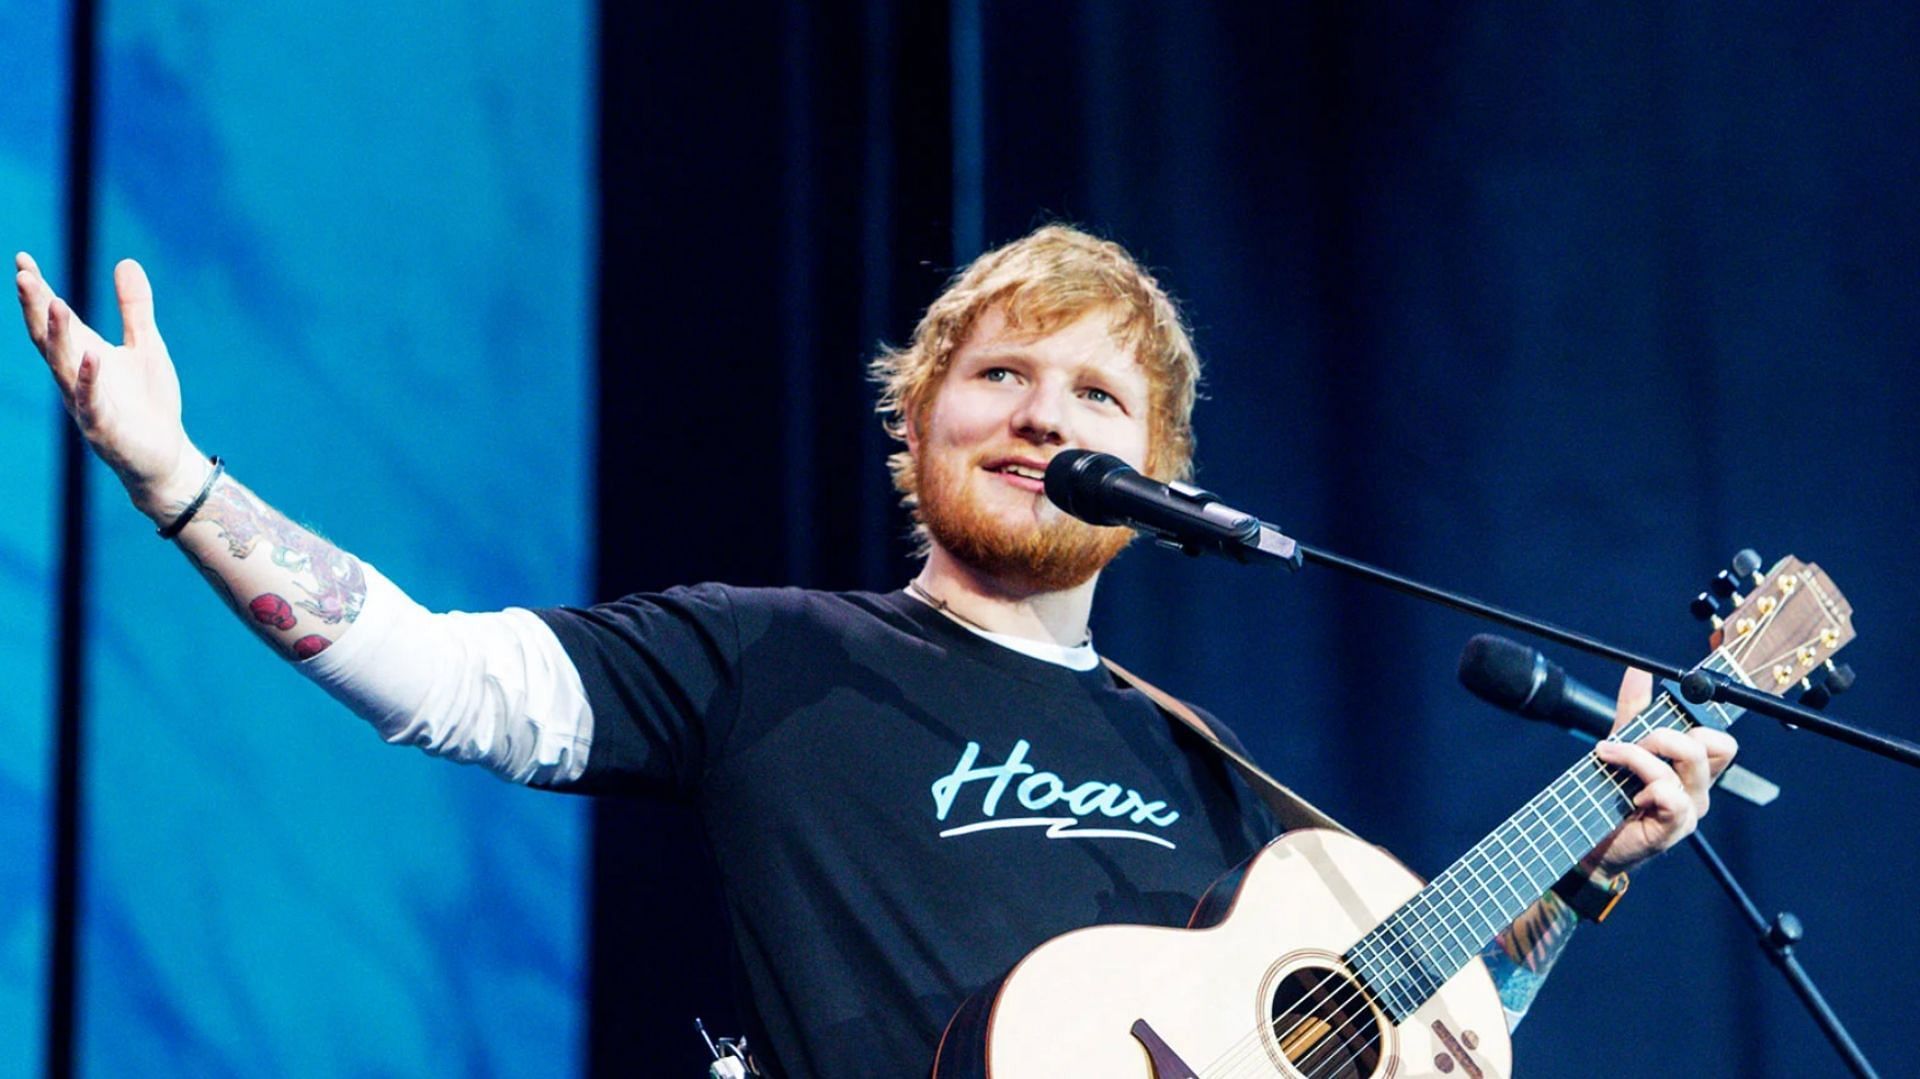 Ed Sheeran performing. (Image via Ricordo Rubio / Getty Images)